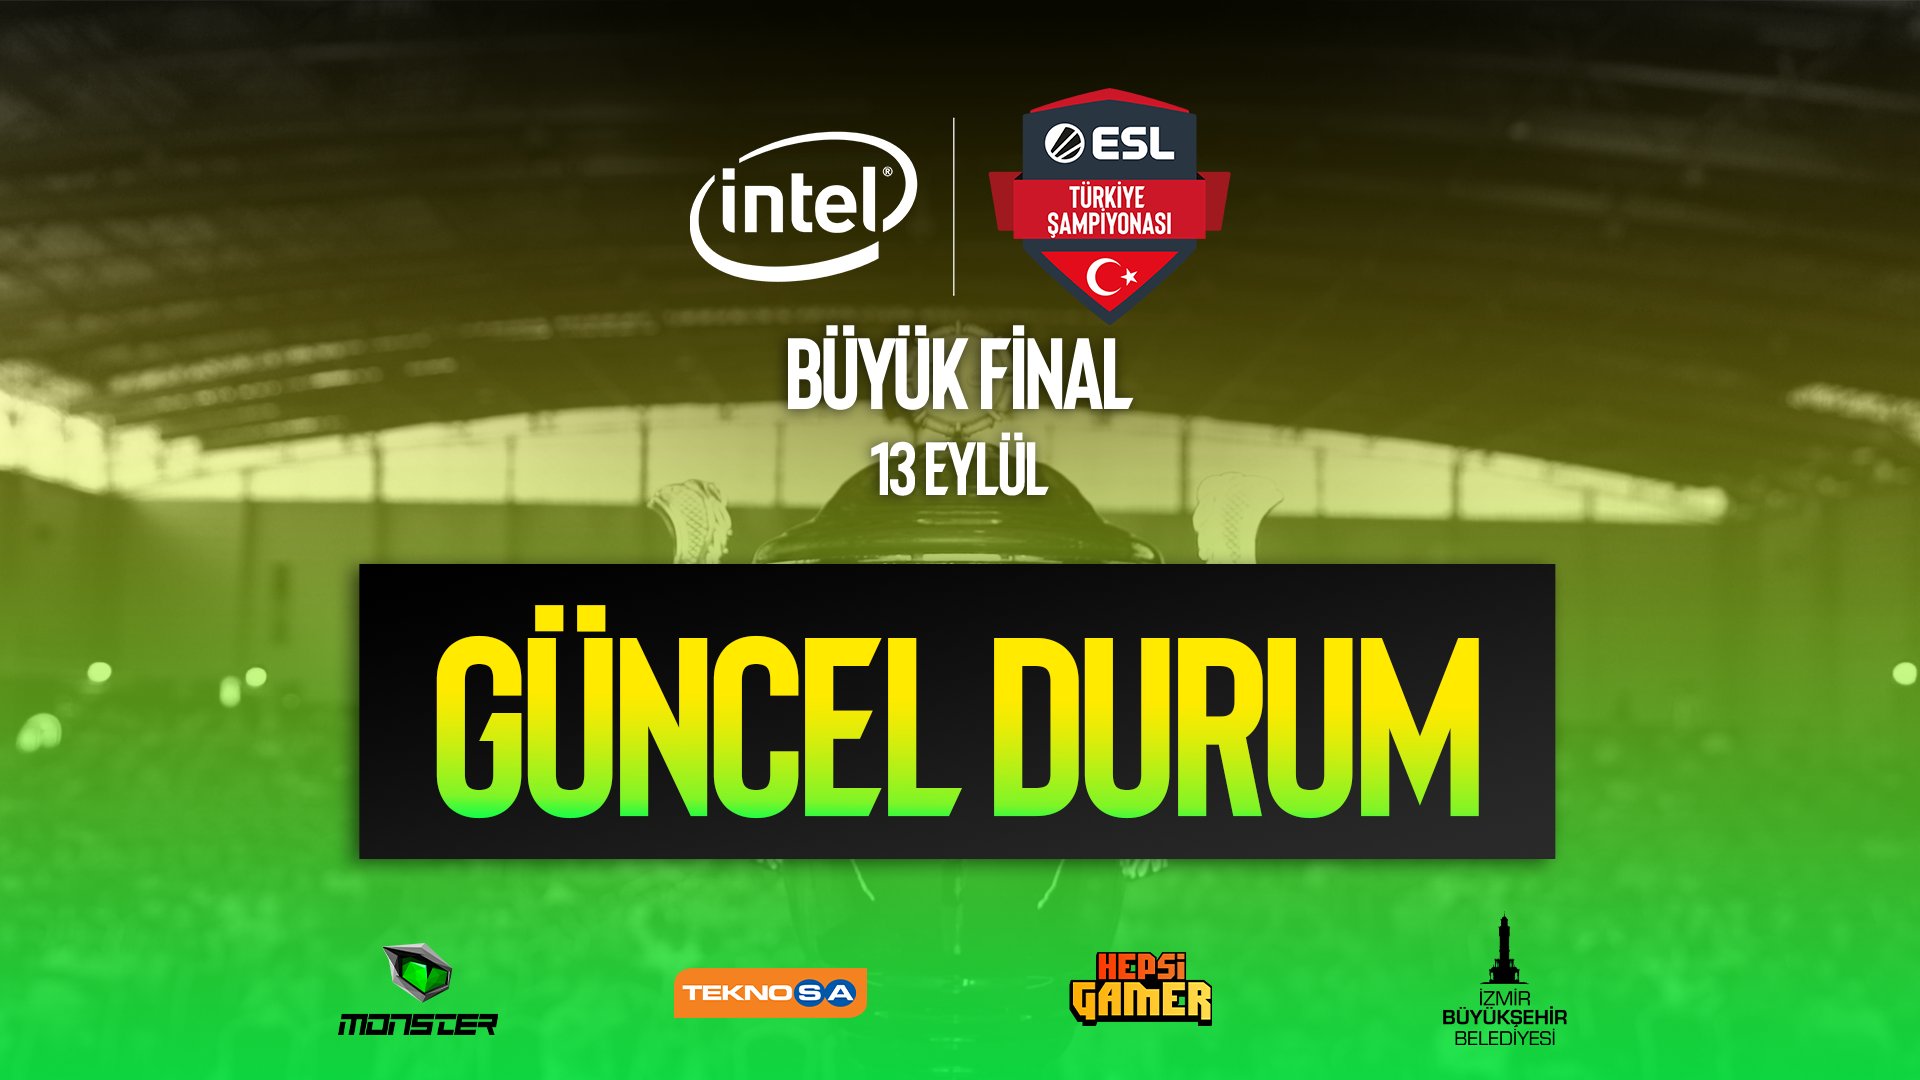 Intel ESL Türkiye Şampiyonası'na Korona virüsü engeli!